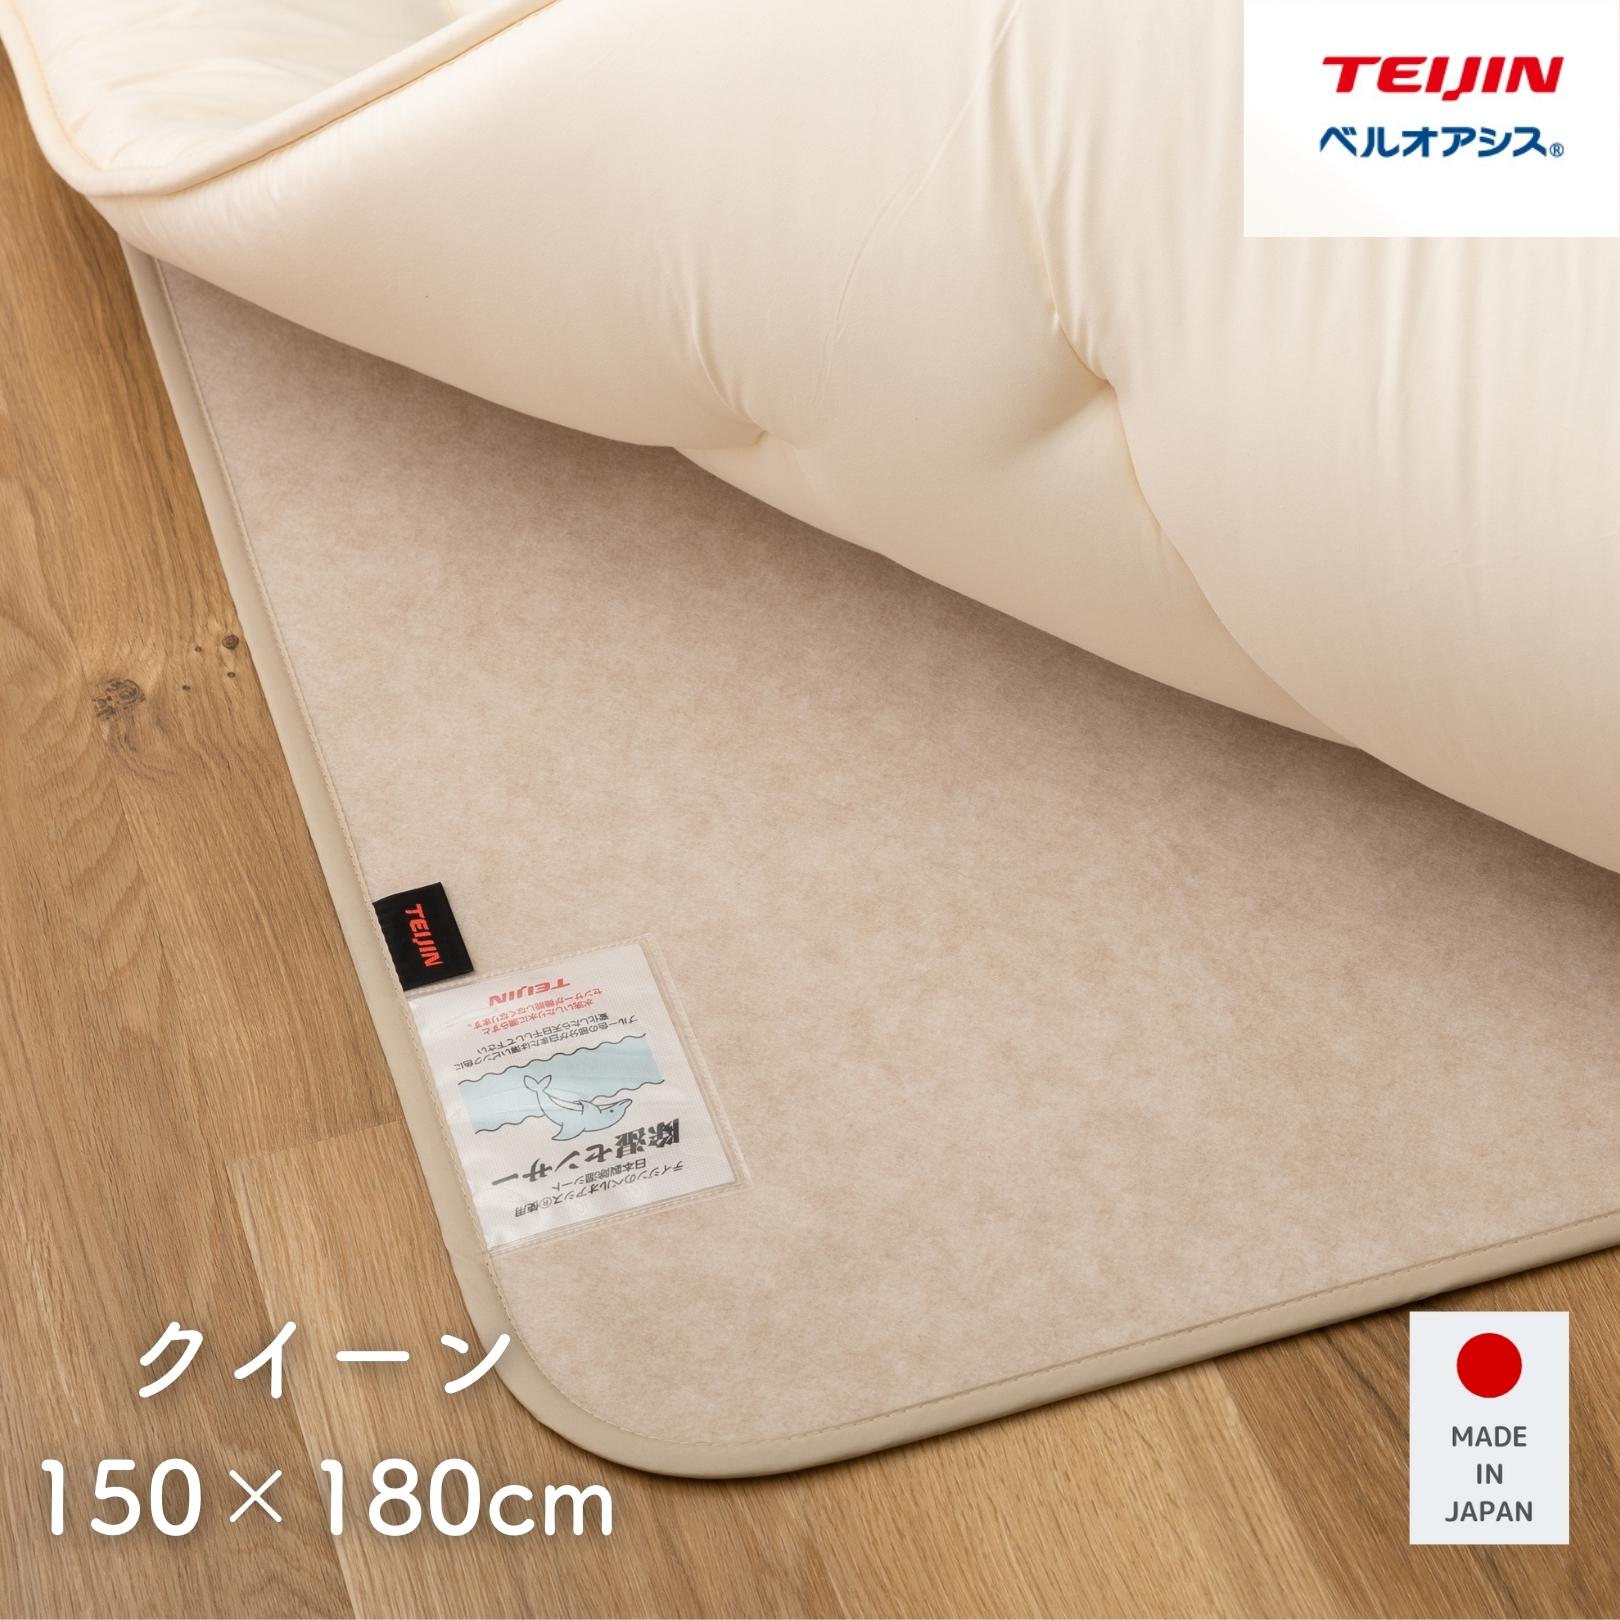 除湿シート クイーン ベージュ テイジン ベルオアシス(R) 使用 日本製 150×180cm